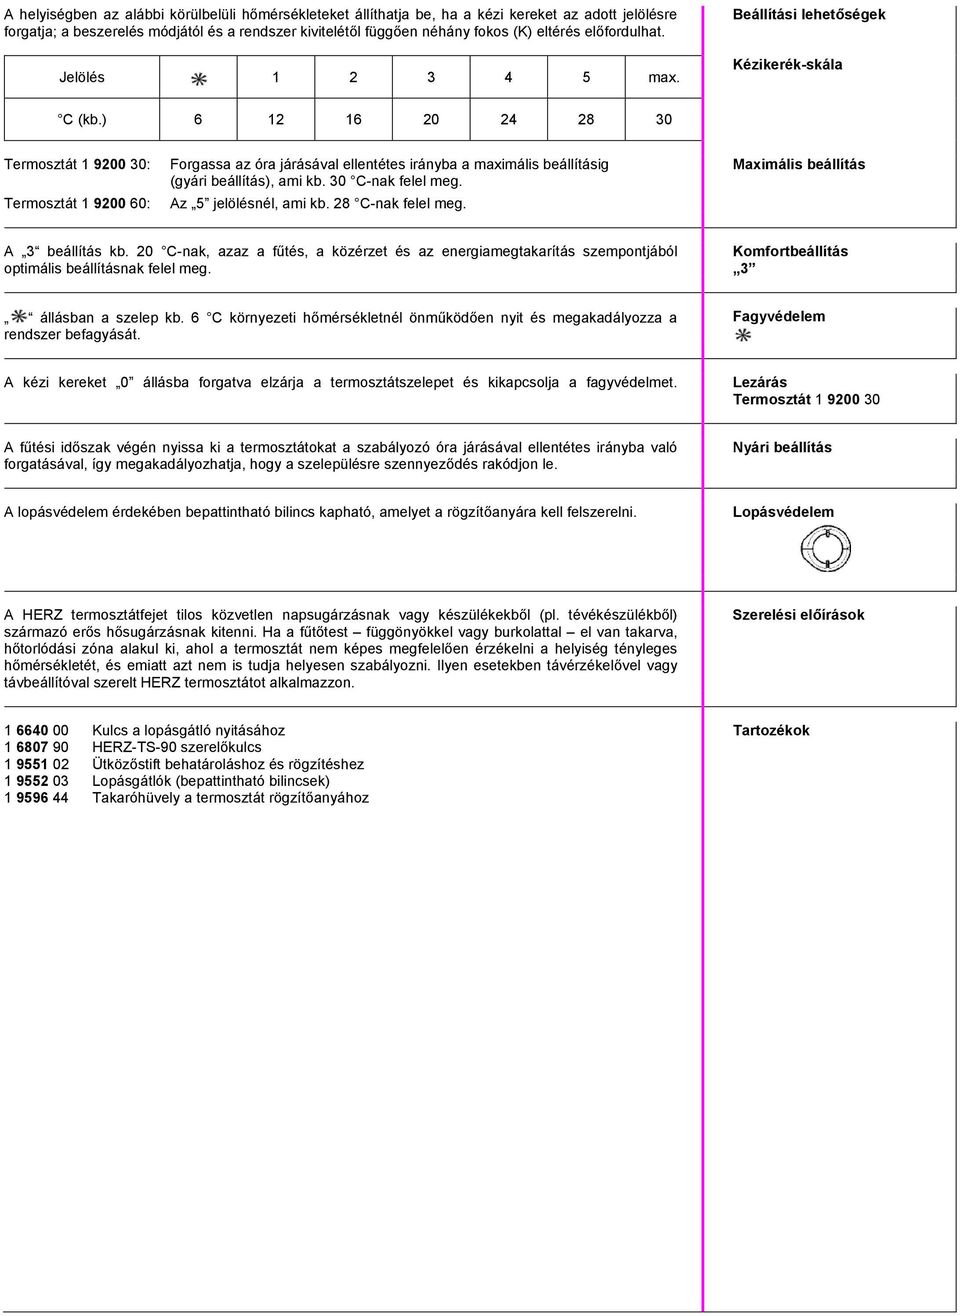 HERZ termosztát. HERZ Armatúra Hungária Kft. Normblatt 7260 D, 7260 H  szept. kiadás - PDF Ingyenes letöltés